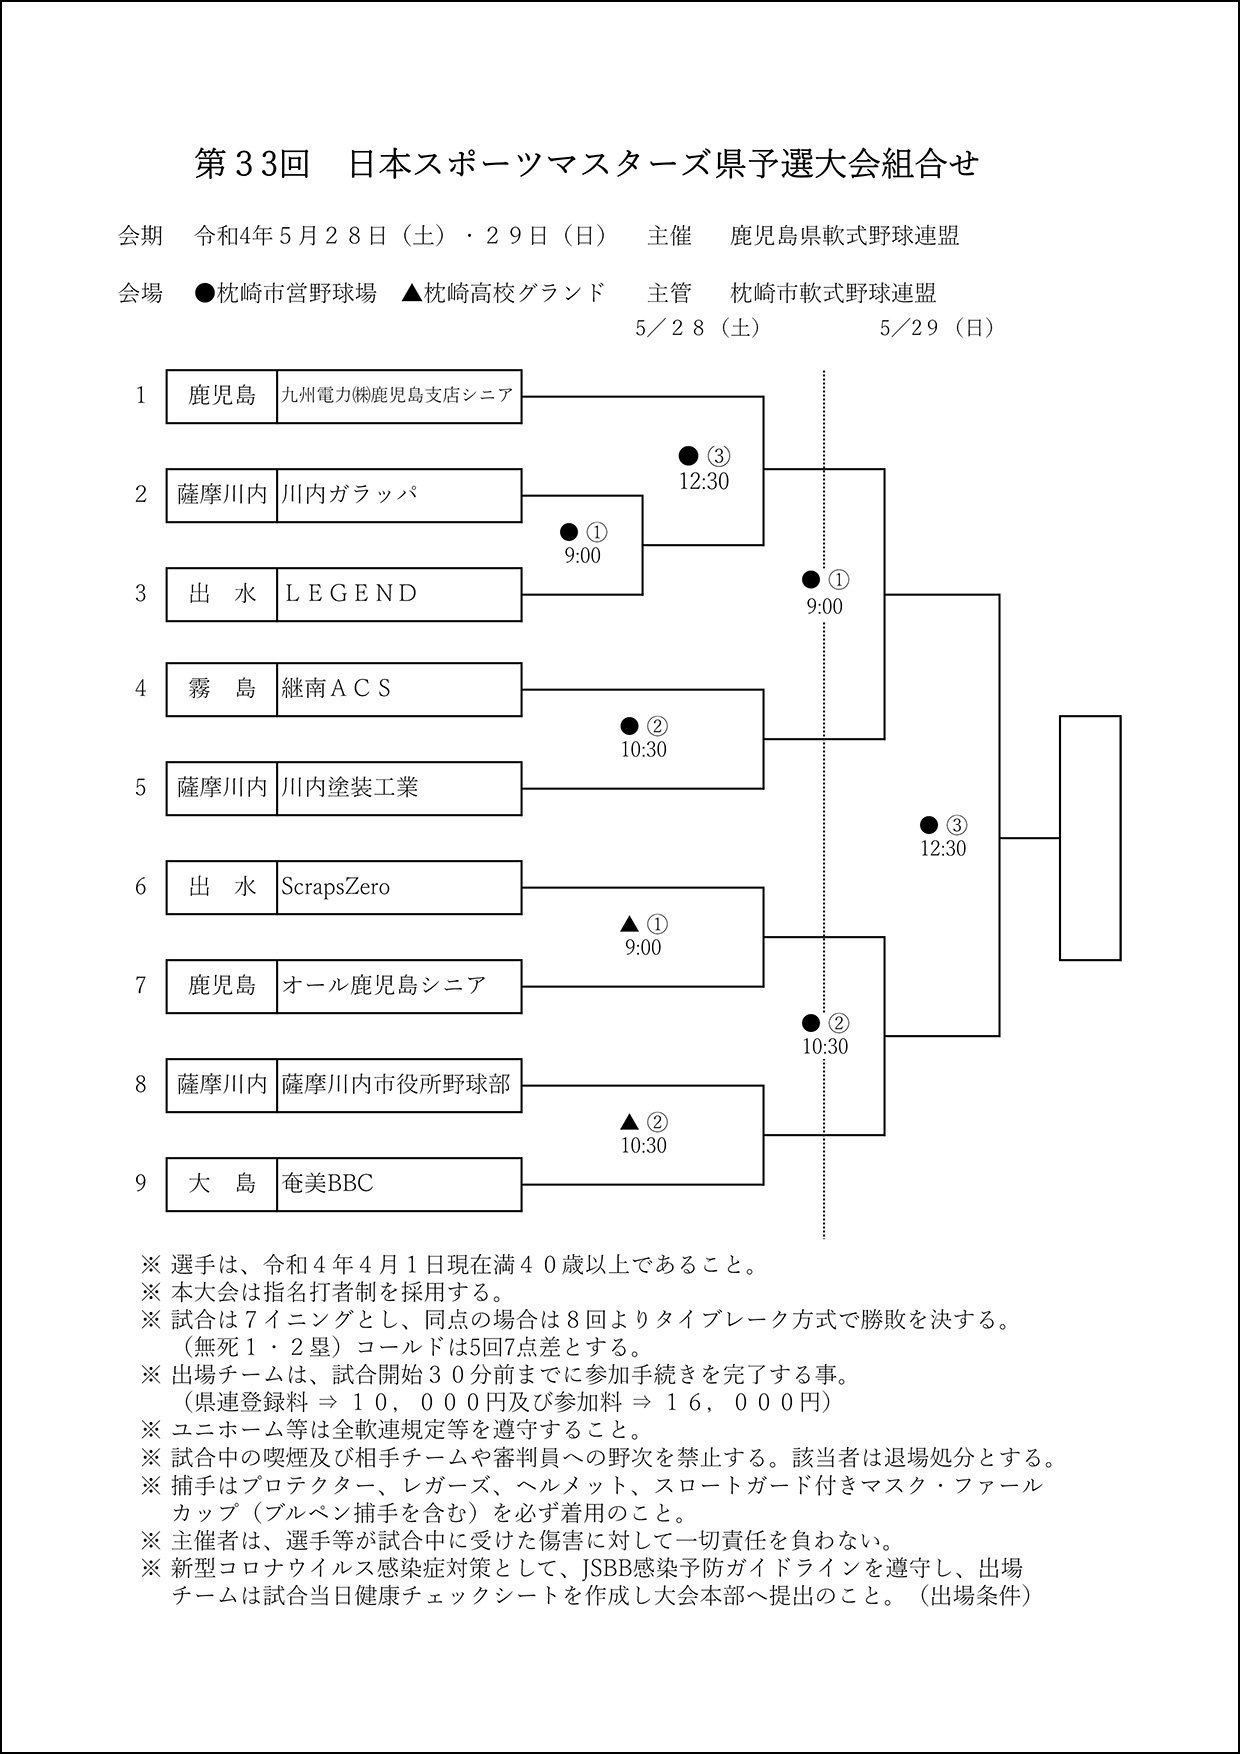 【組合せ】第33回日本スポーツマスターズ県予選大会